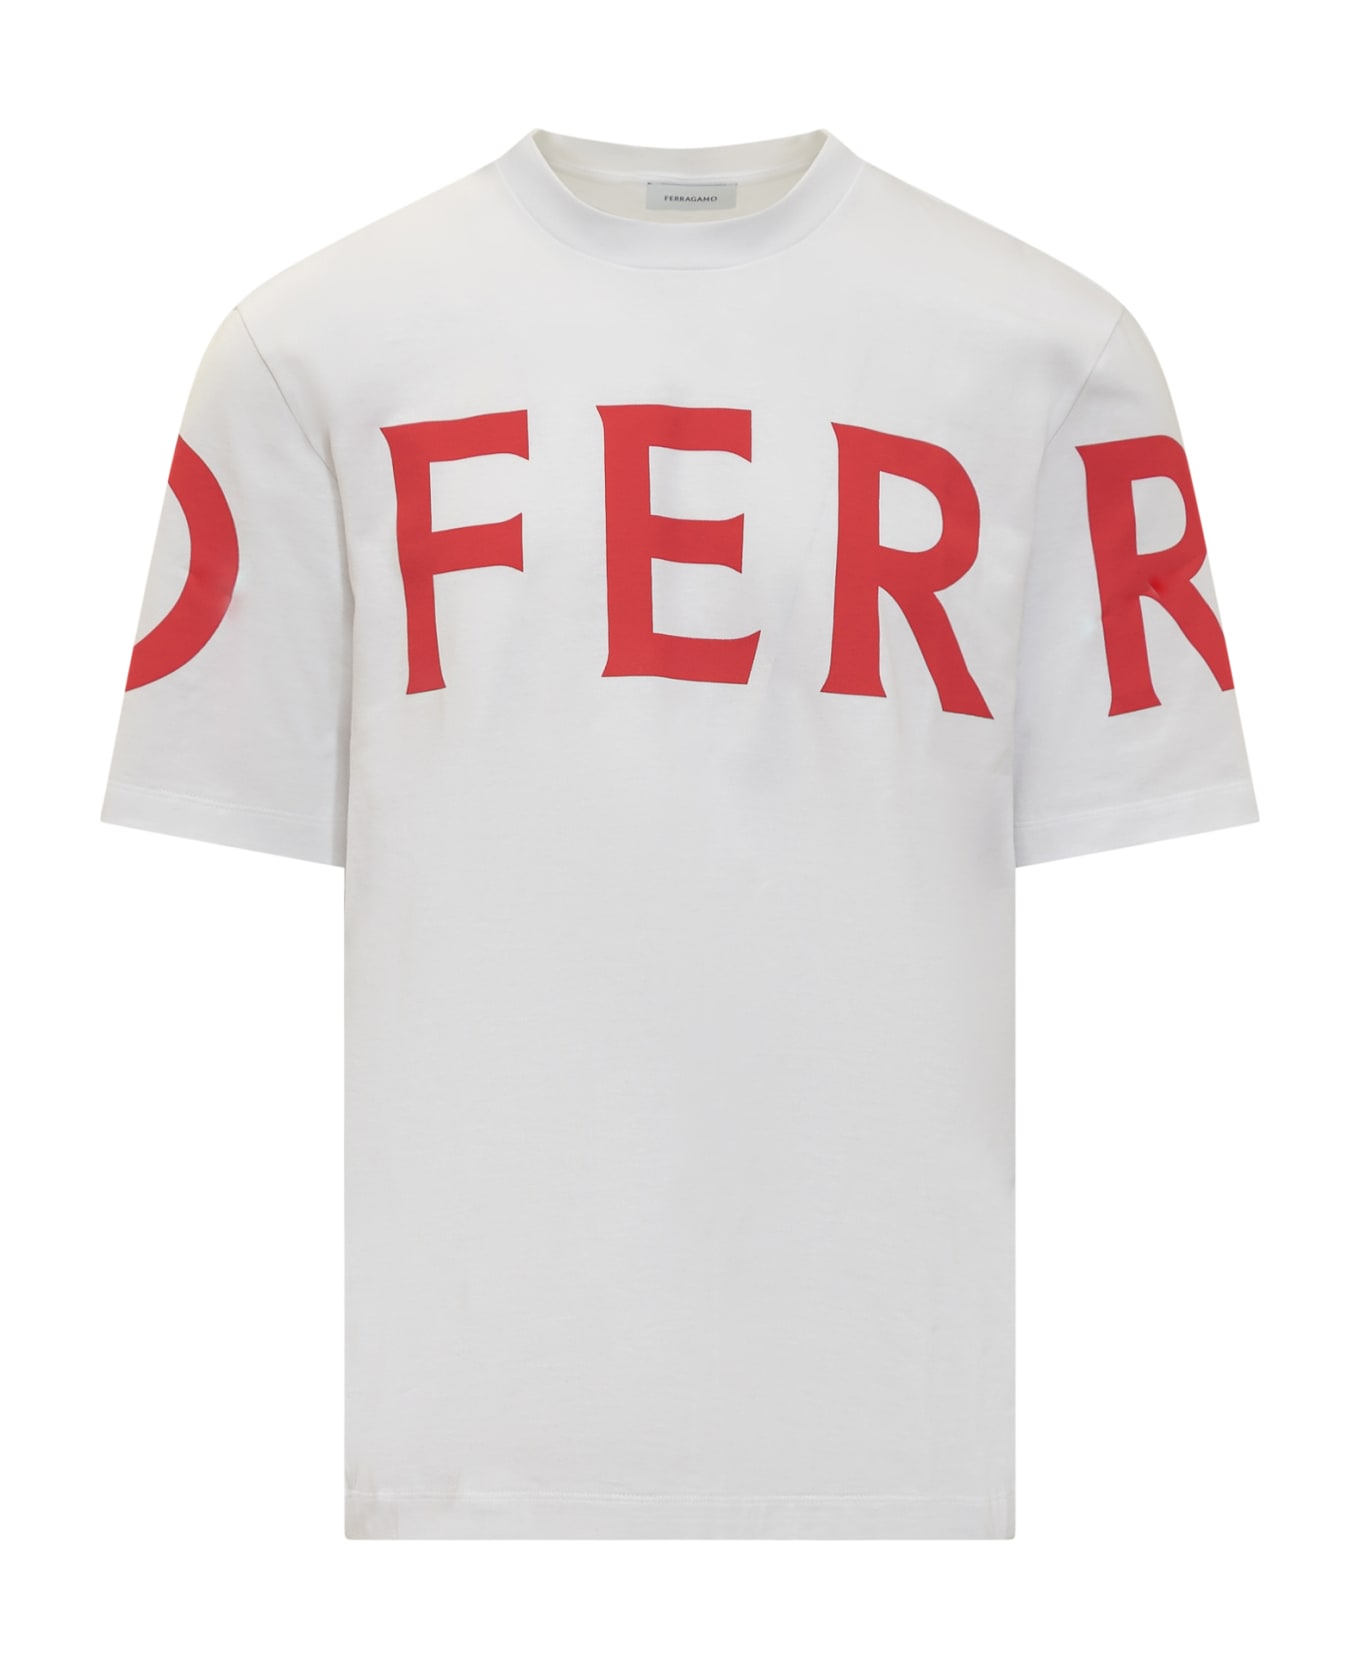 Ferragamo Manifesto T-shirt - WHITE/NEW RED